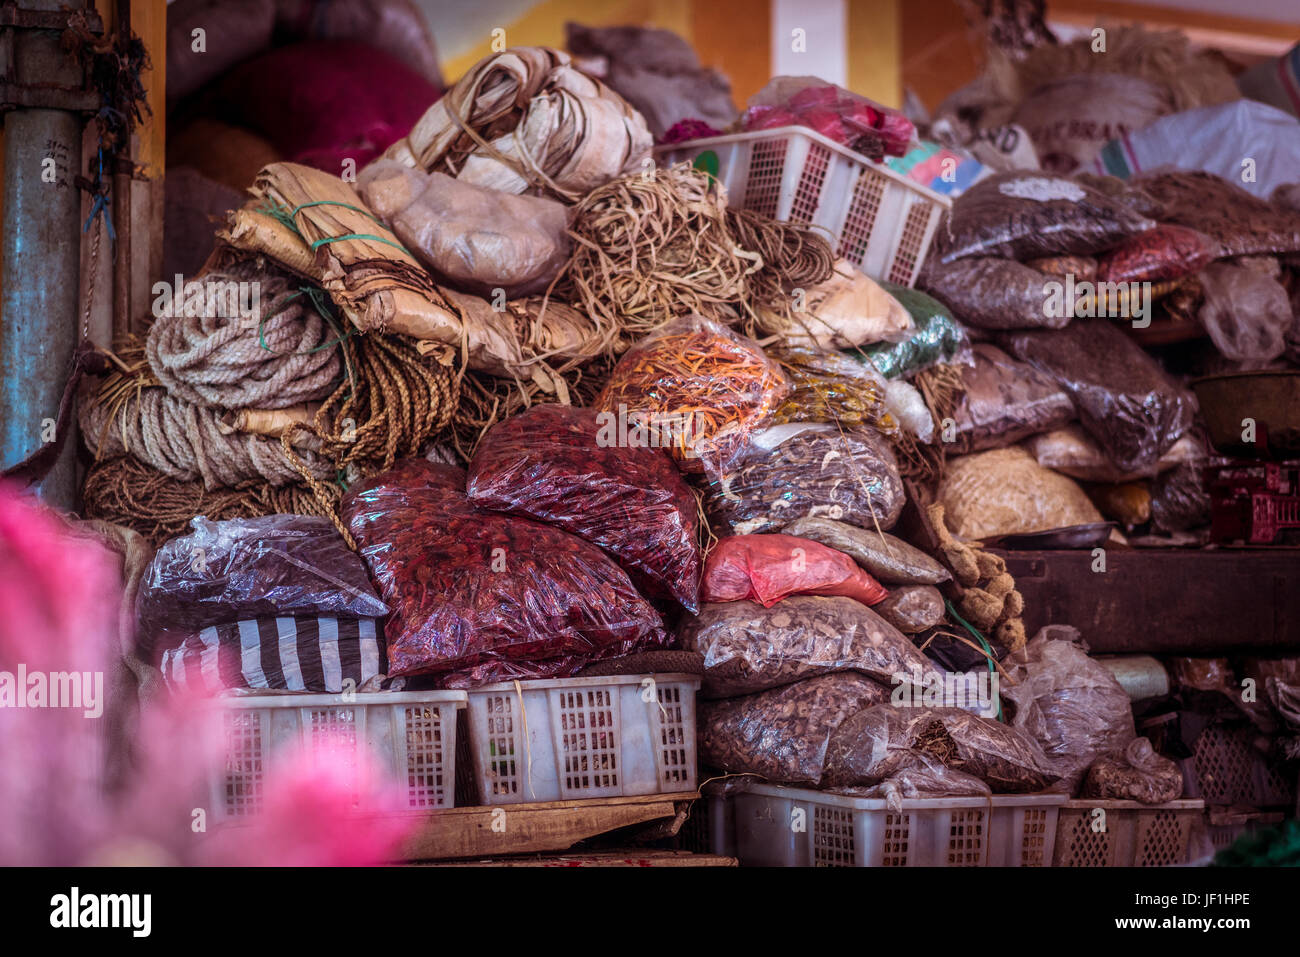 Unorganisiert, aber bunten indonesischen Marktstand, häuften sich mit Taschen aus getrockneten Kräutern, Gewürzen und Seile. Stockfoto